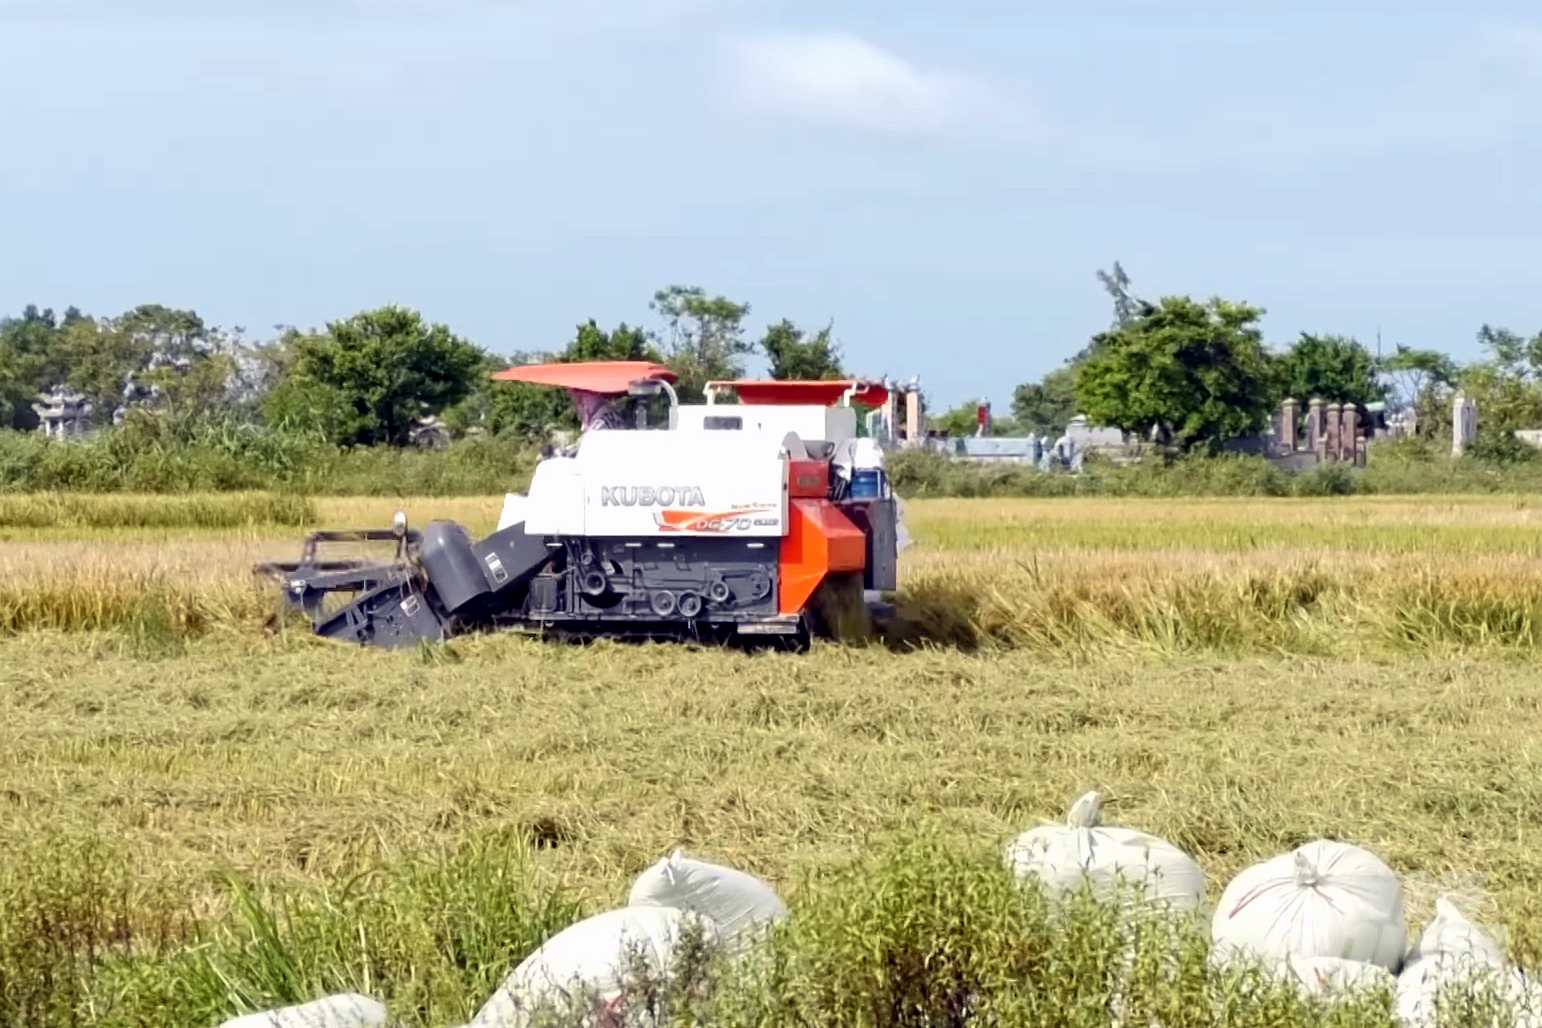 Tranh thủ thời tiết nắng ráo, nông dân Quảng Trị tập trung thu hoạch lúa hè thu. Ảnh: Võ Dũng.